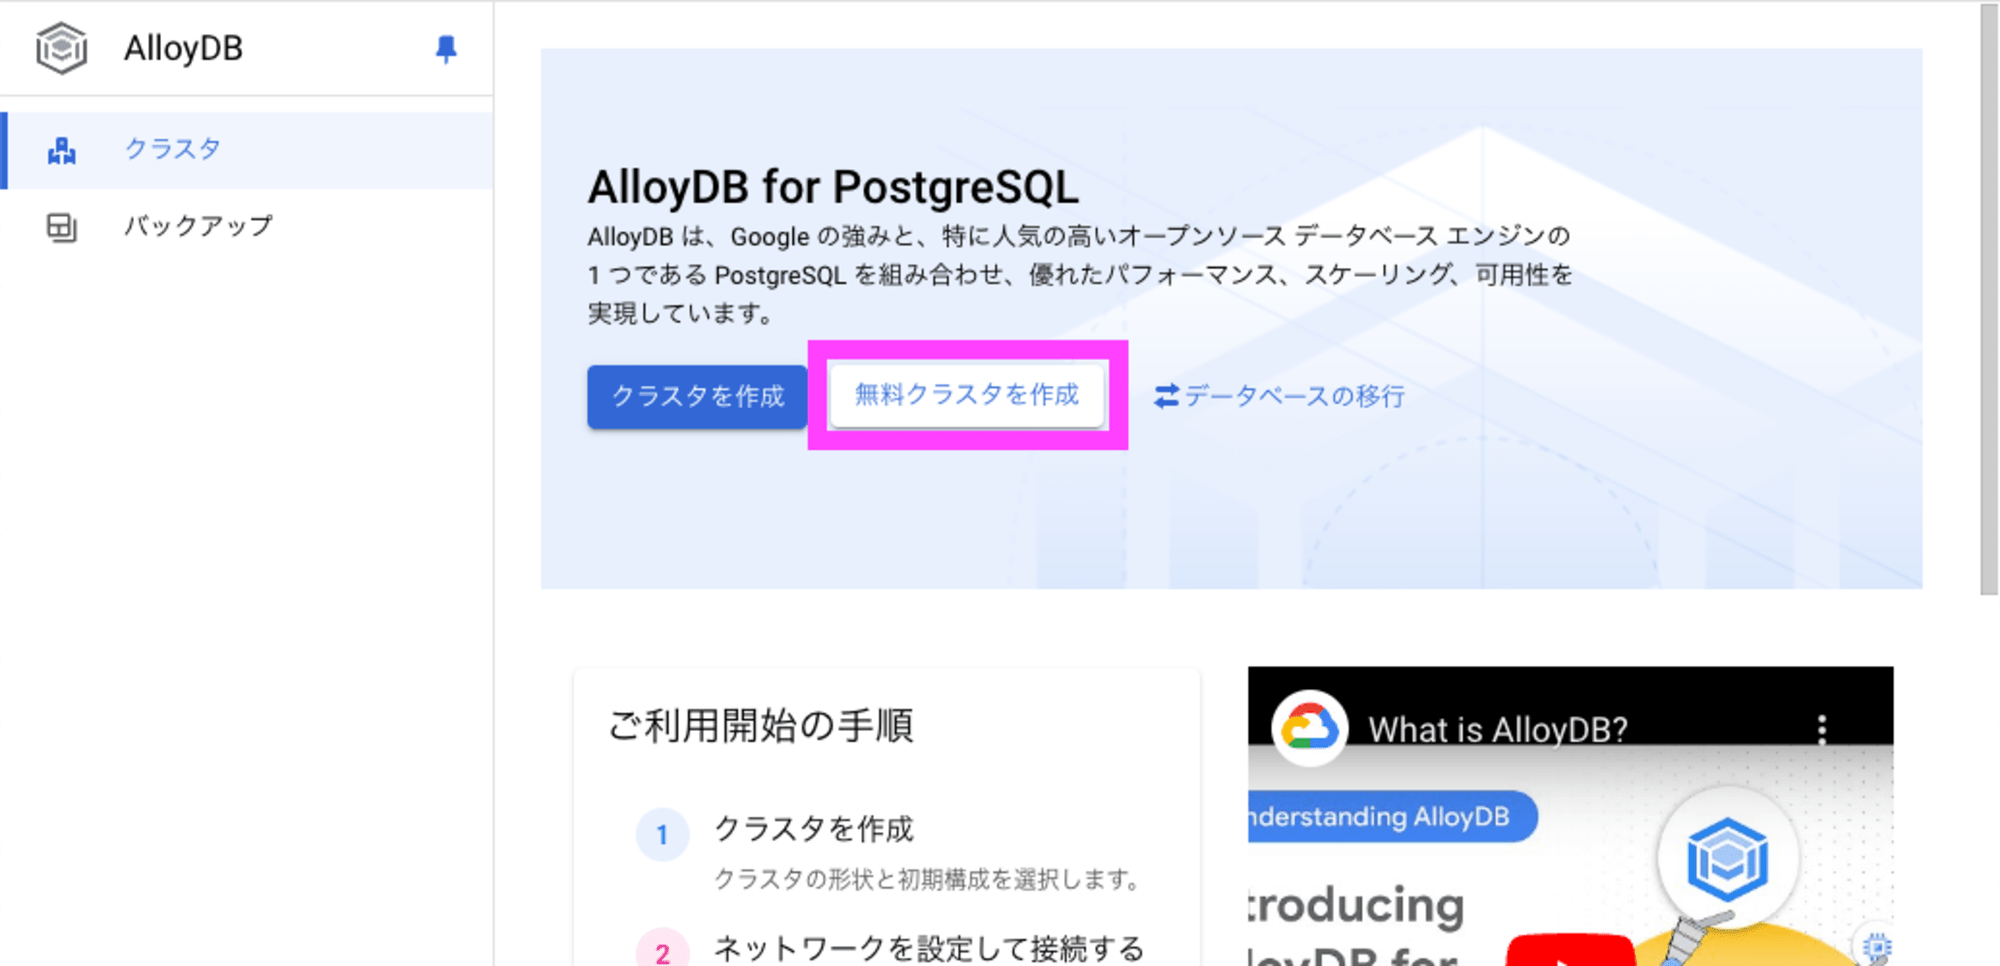 AlloyDB for PostgreSQL 無料クラスタを作成